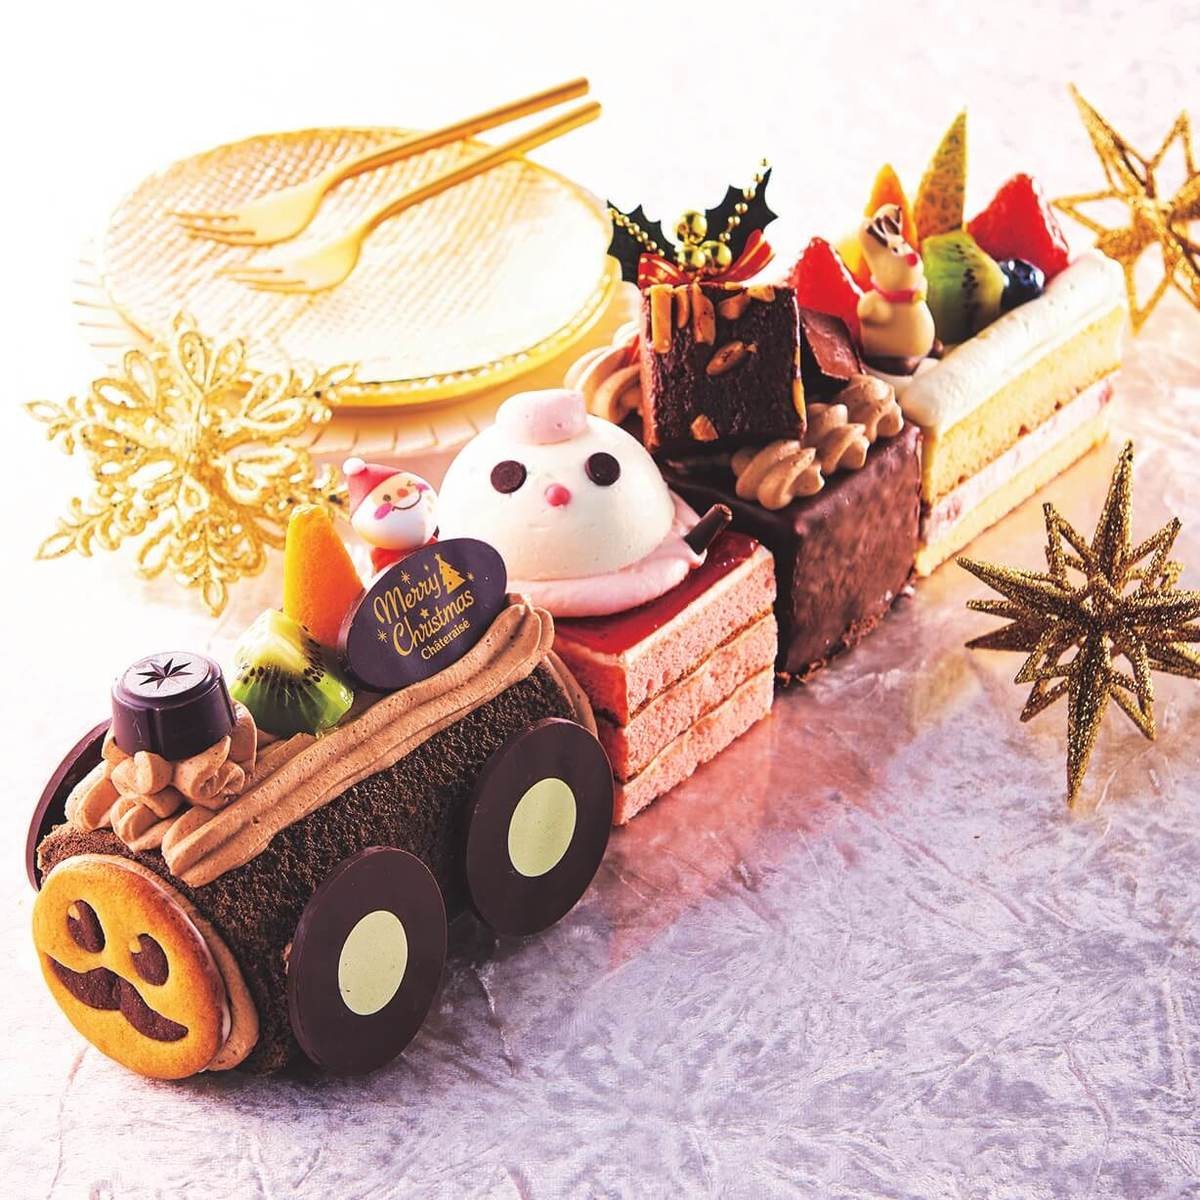 シャトレーゼ クリスマスケーキ21 今年もデコレーションに注目 ヨムーノ